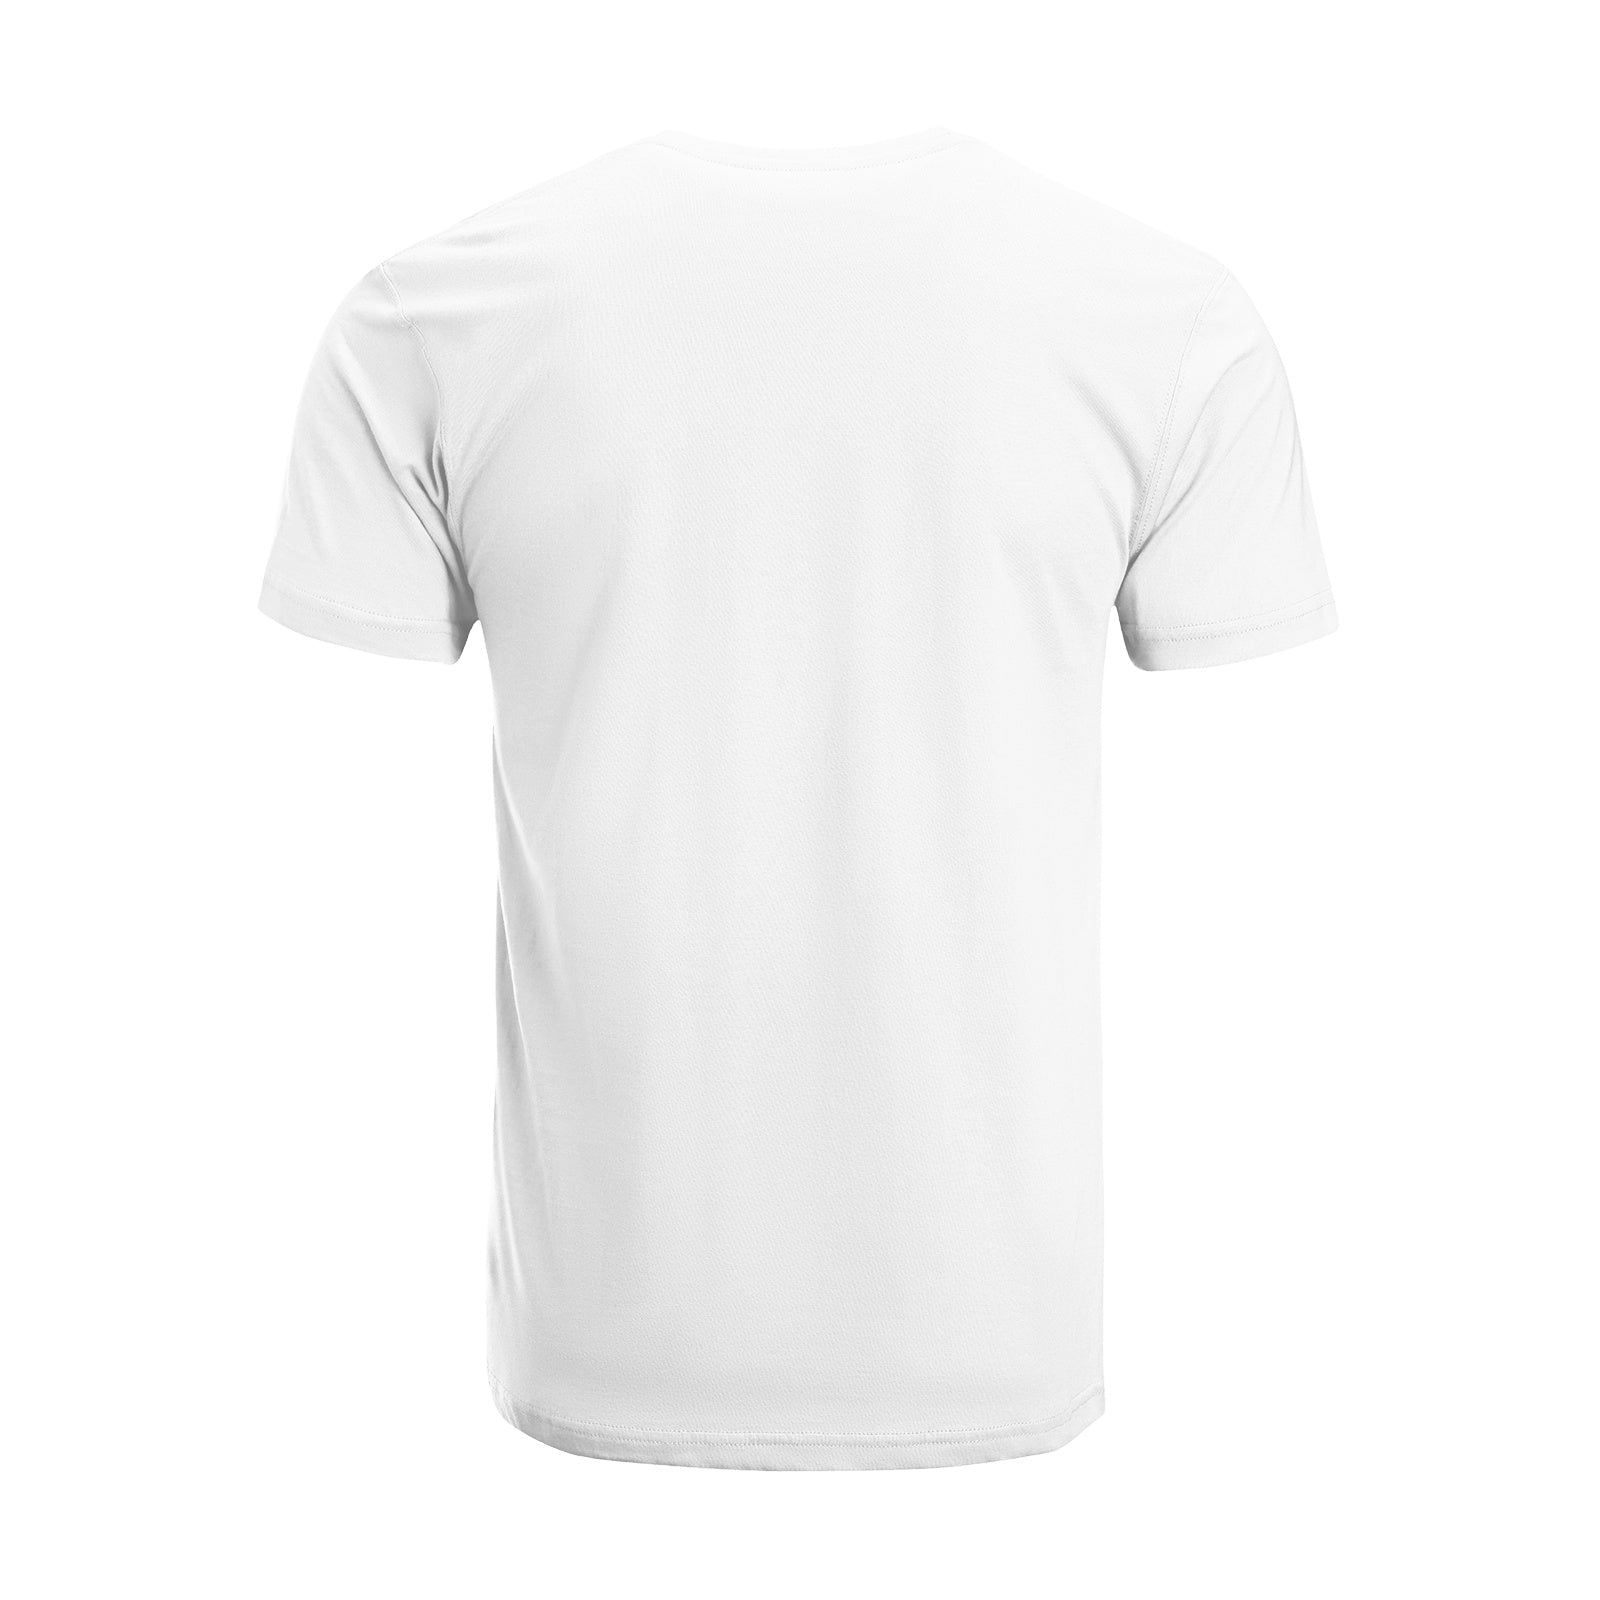 Meow T-Shirt DromedarShop.com Online Boutique